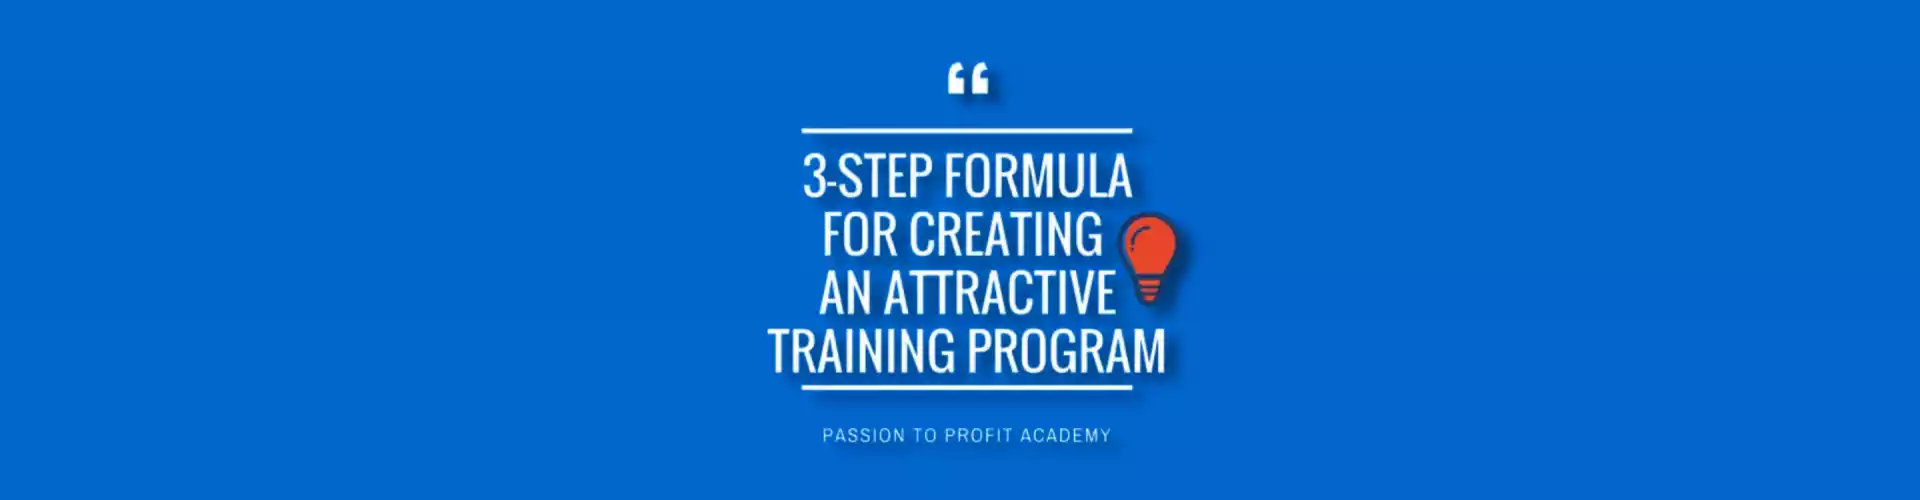 3-етапна формула для створення привабливої програми навчання - багатомовна